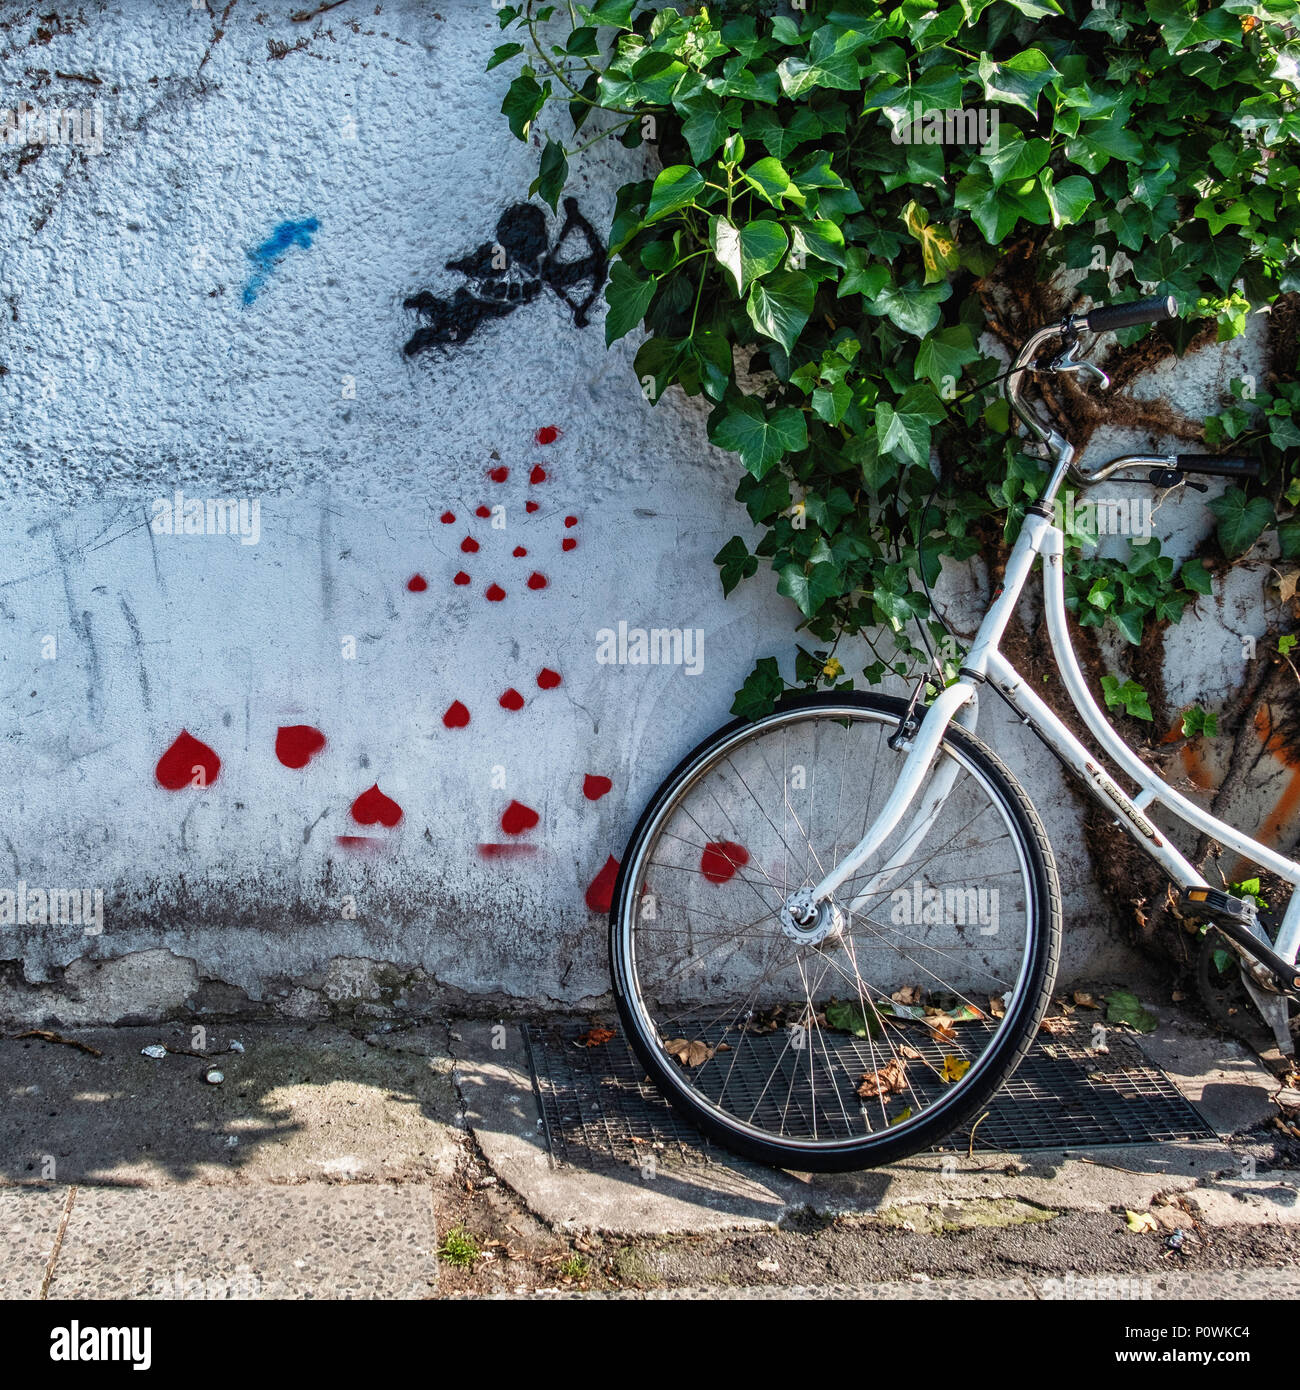 Berlin Mitte. Urban Still Life, Arte di strada, Amorino con cuori rossi sulla coperta di edera e di parete di biciclette parcheggiate Foto Stock